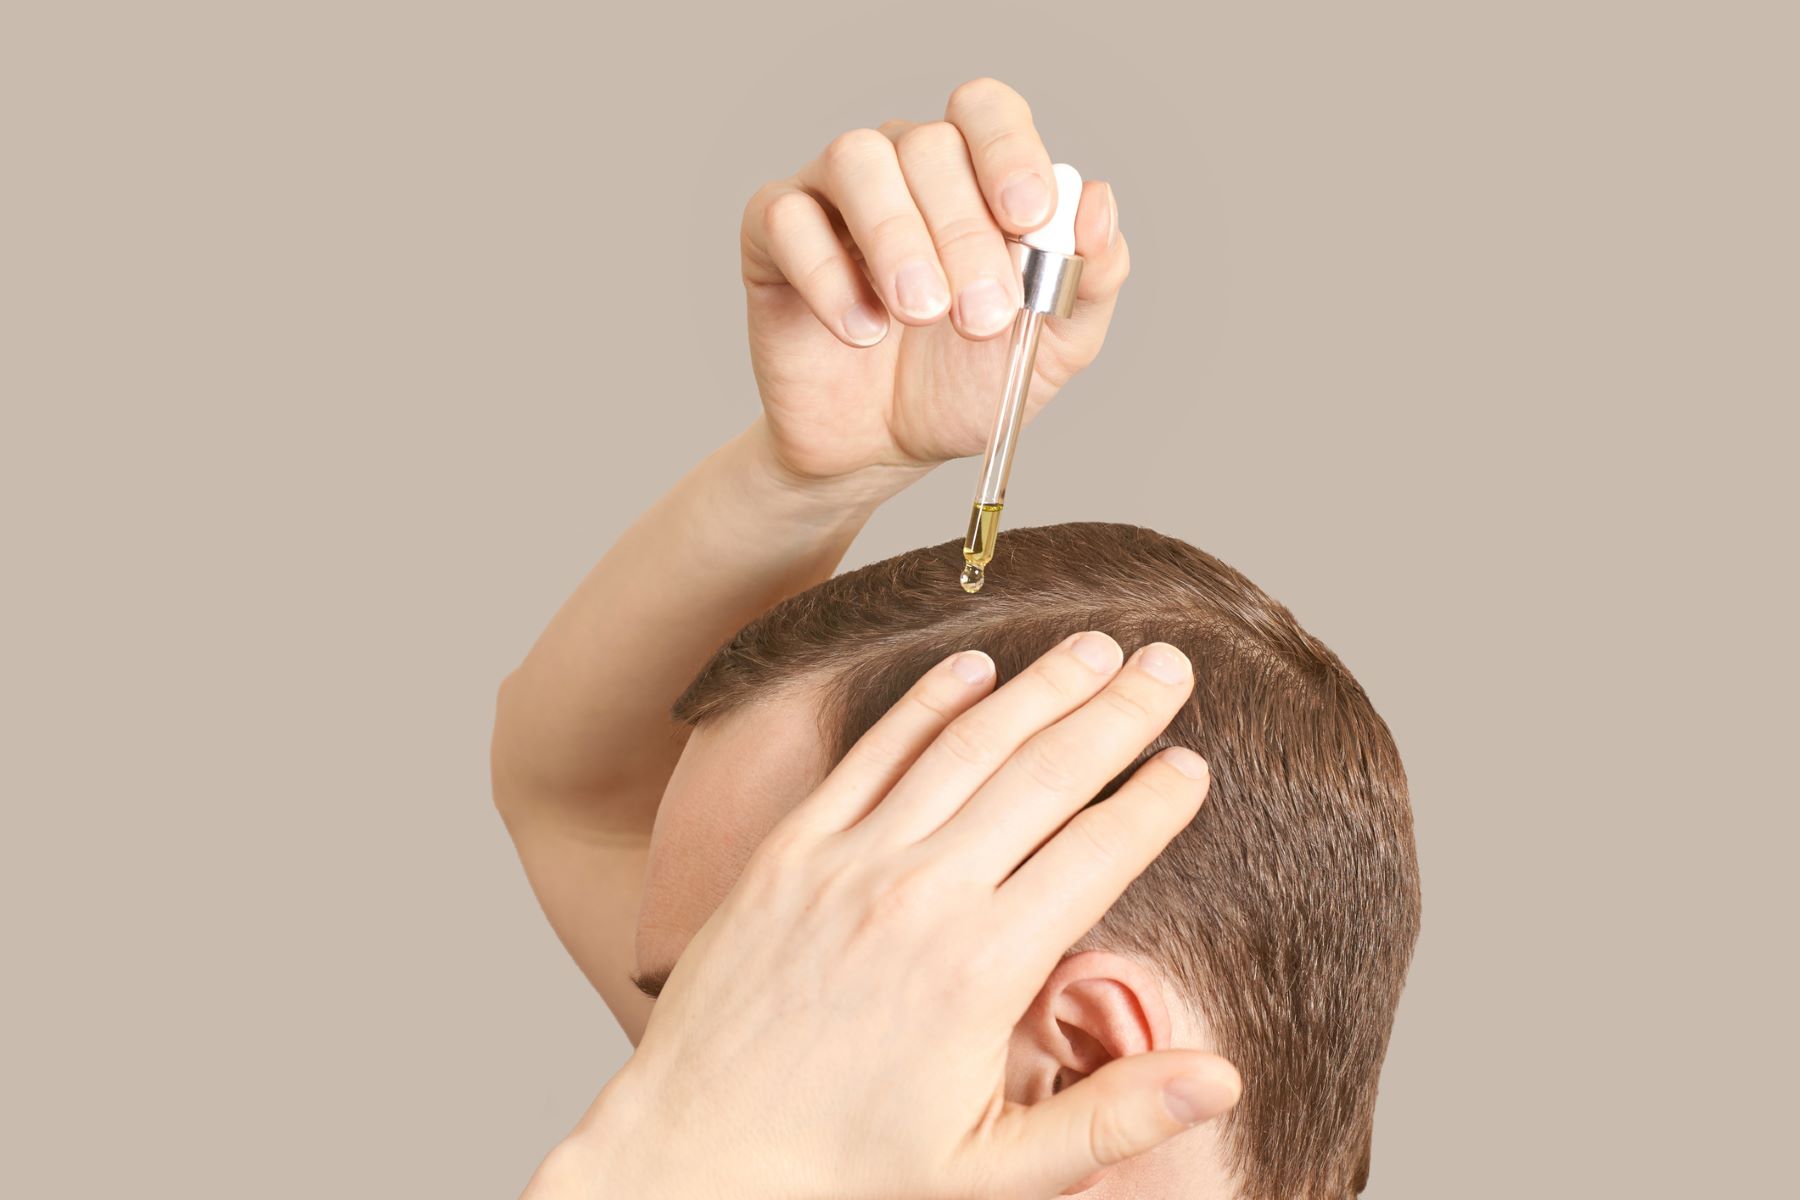 Man using hair loss medication